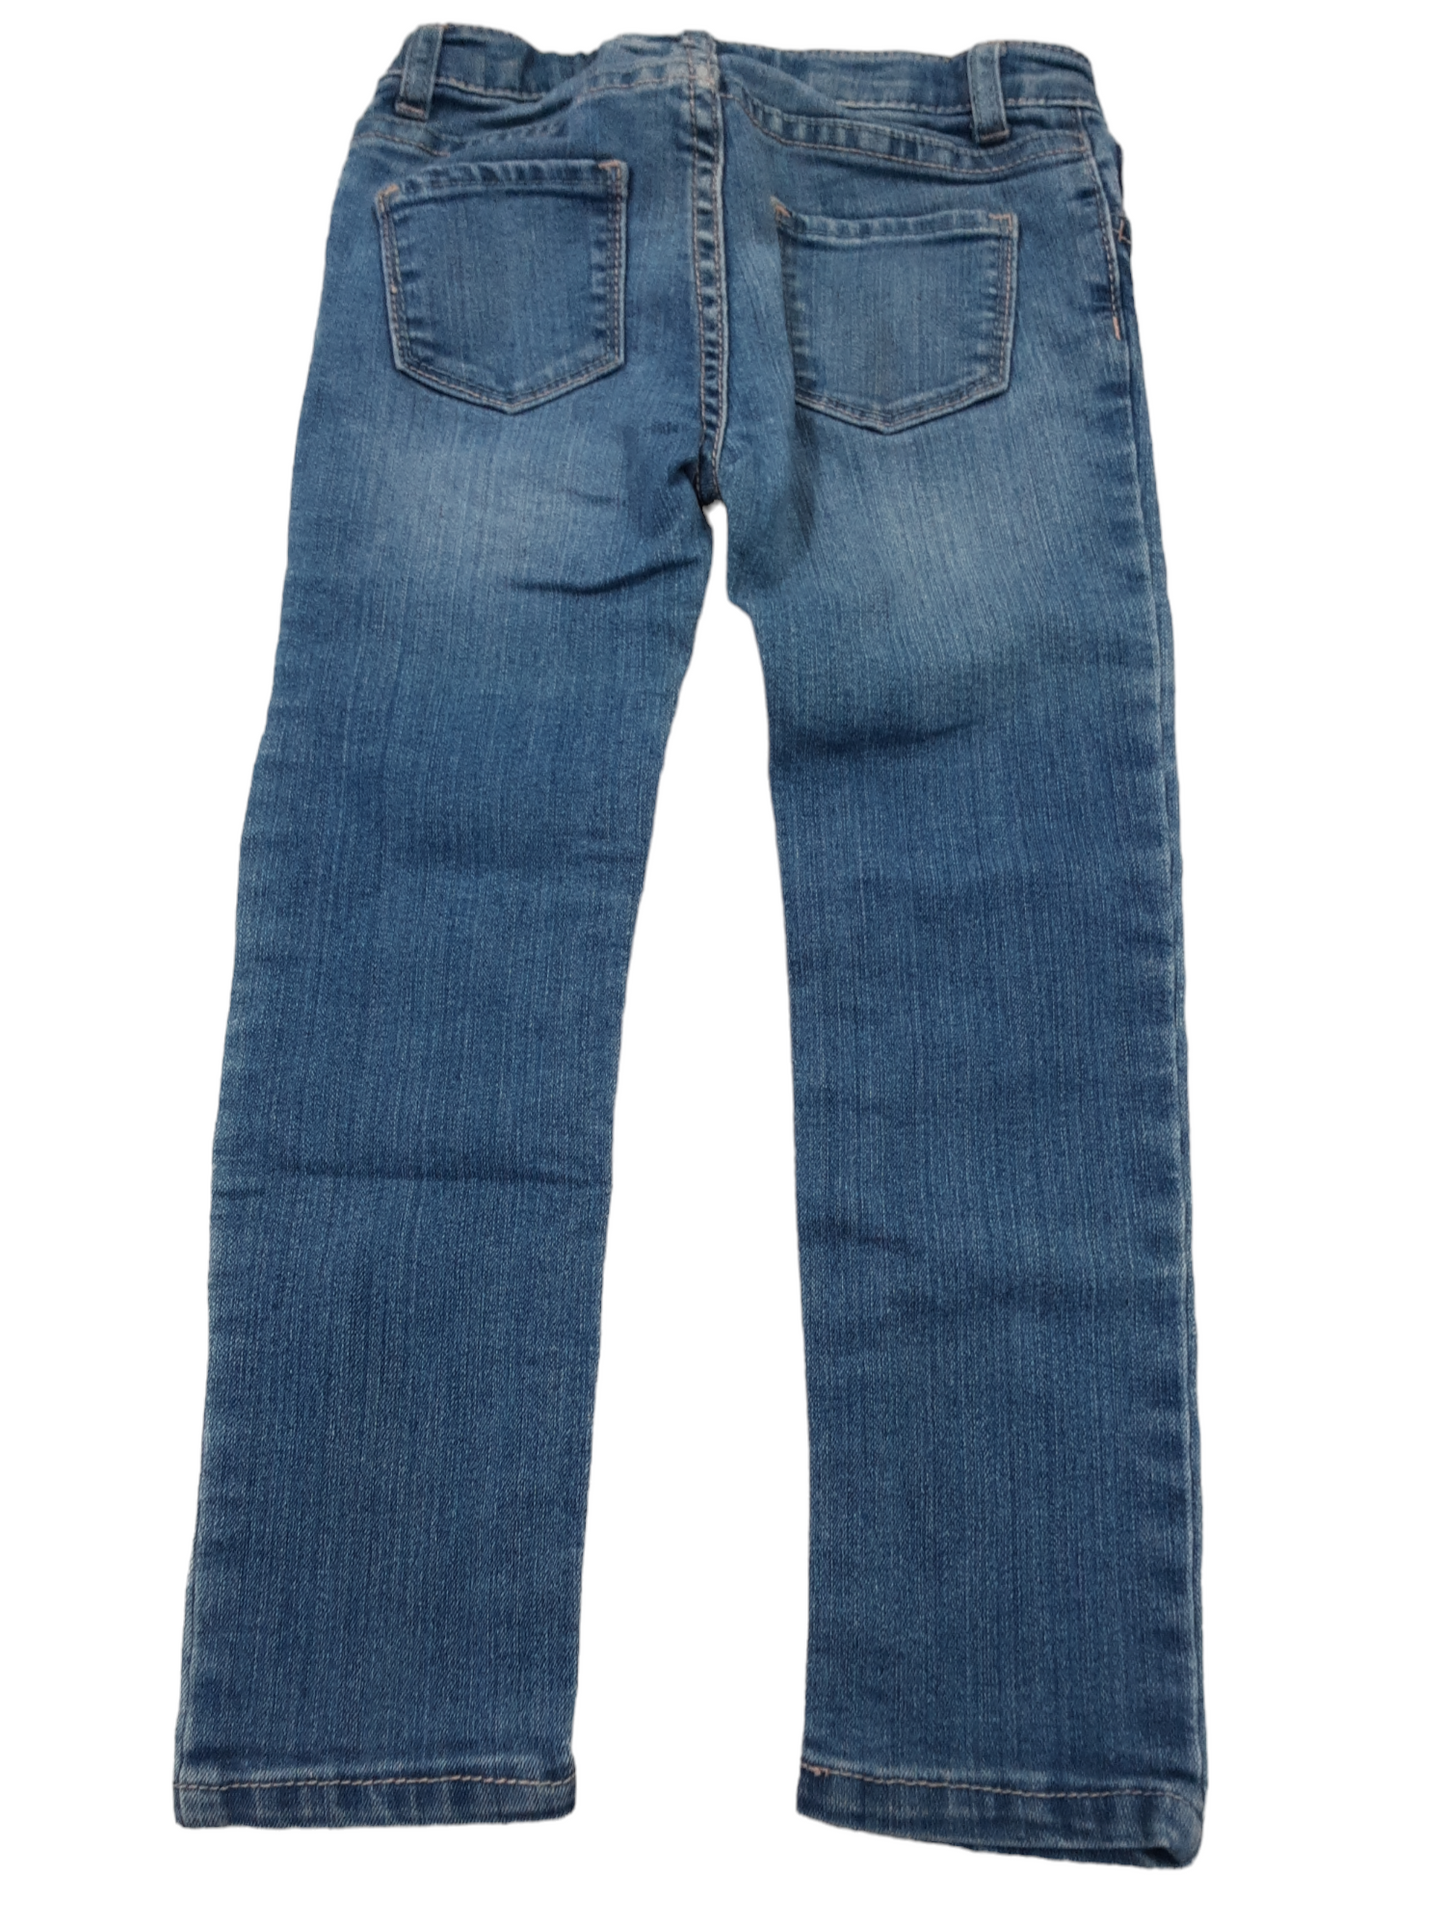 Light blue skinny jeans size 5